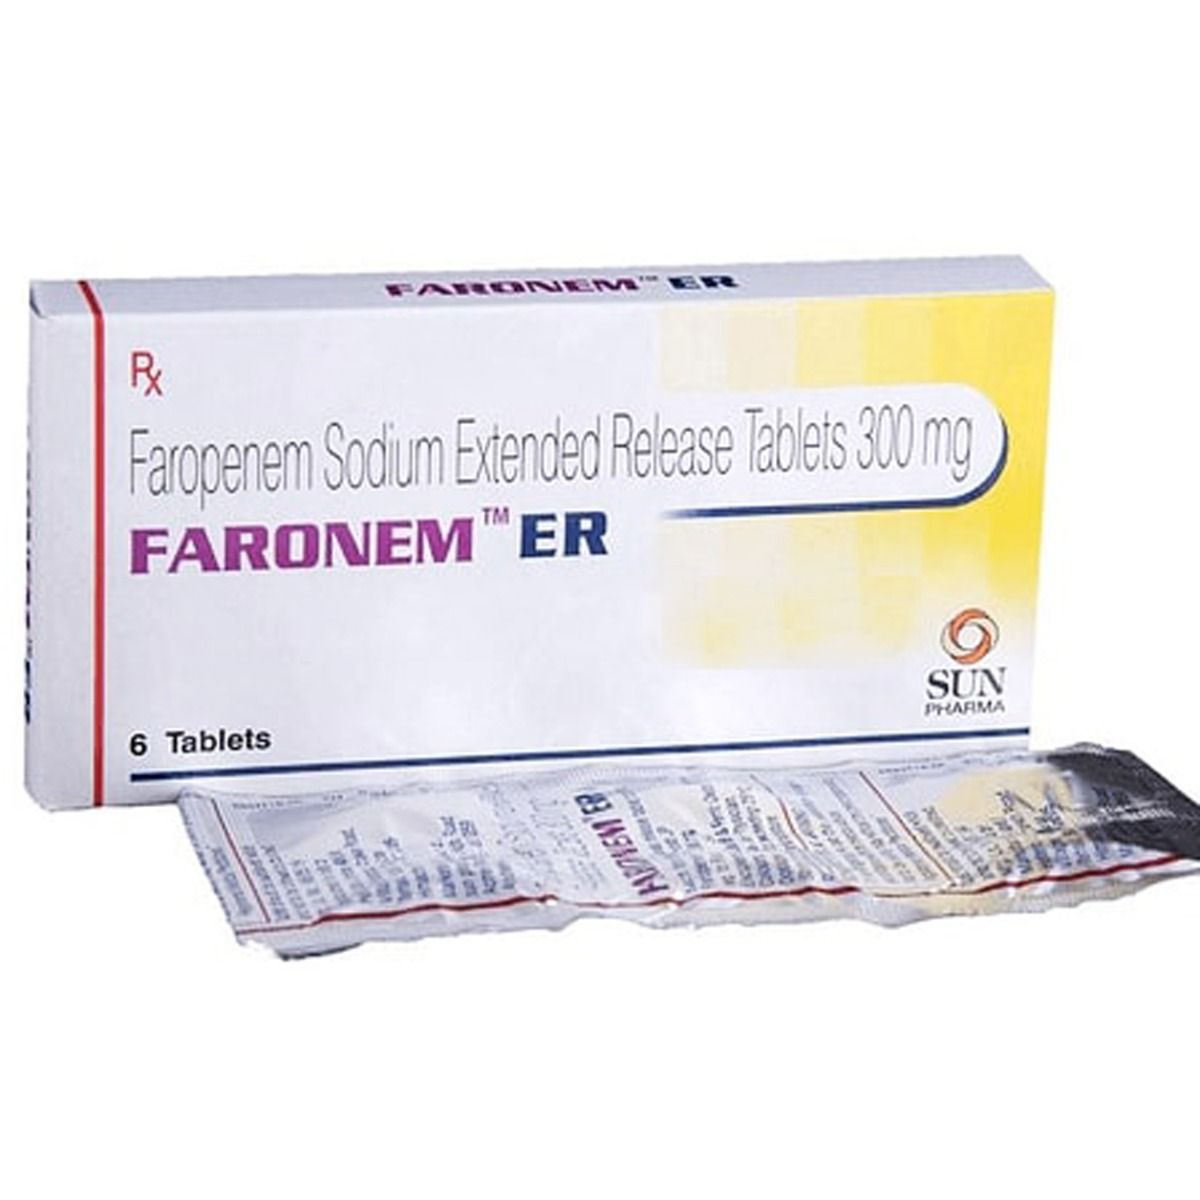 Buy Faronem ER Tablet 6's Online